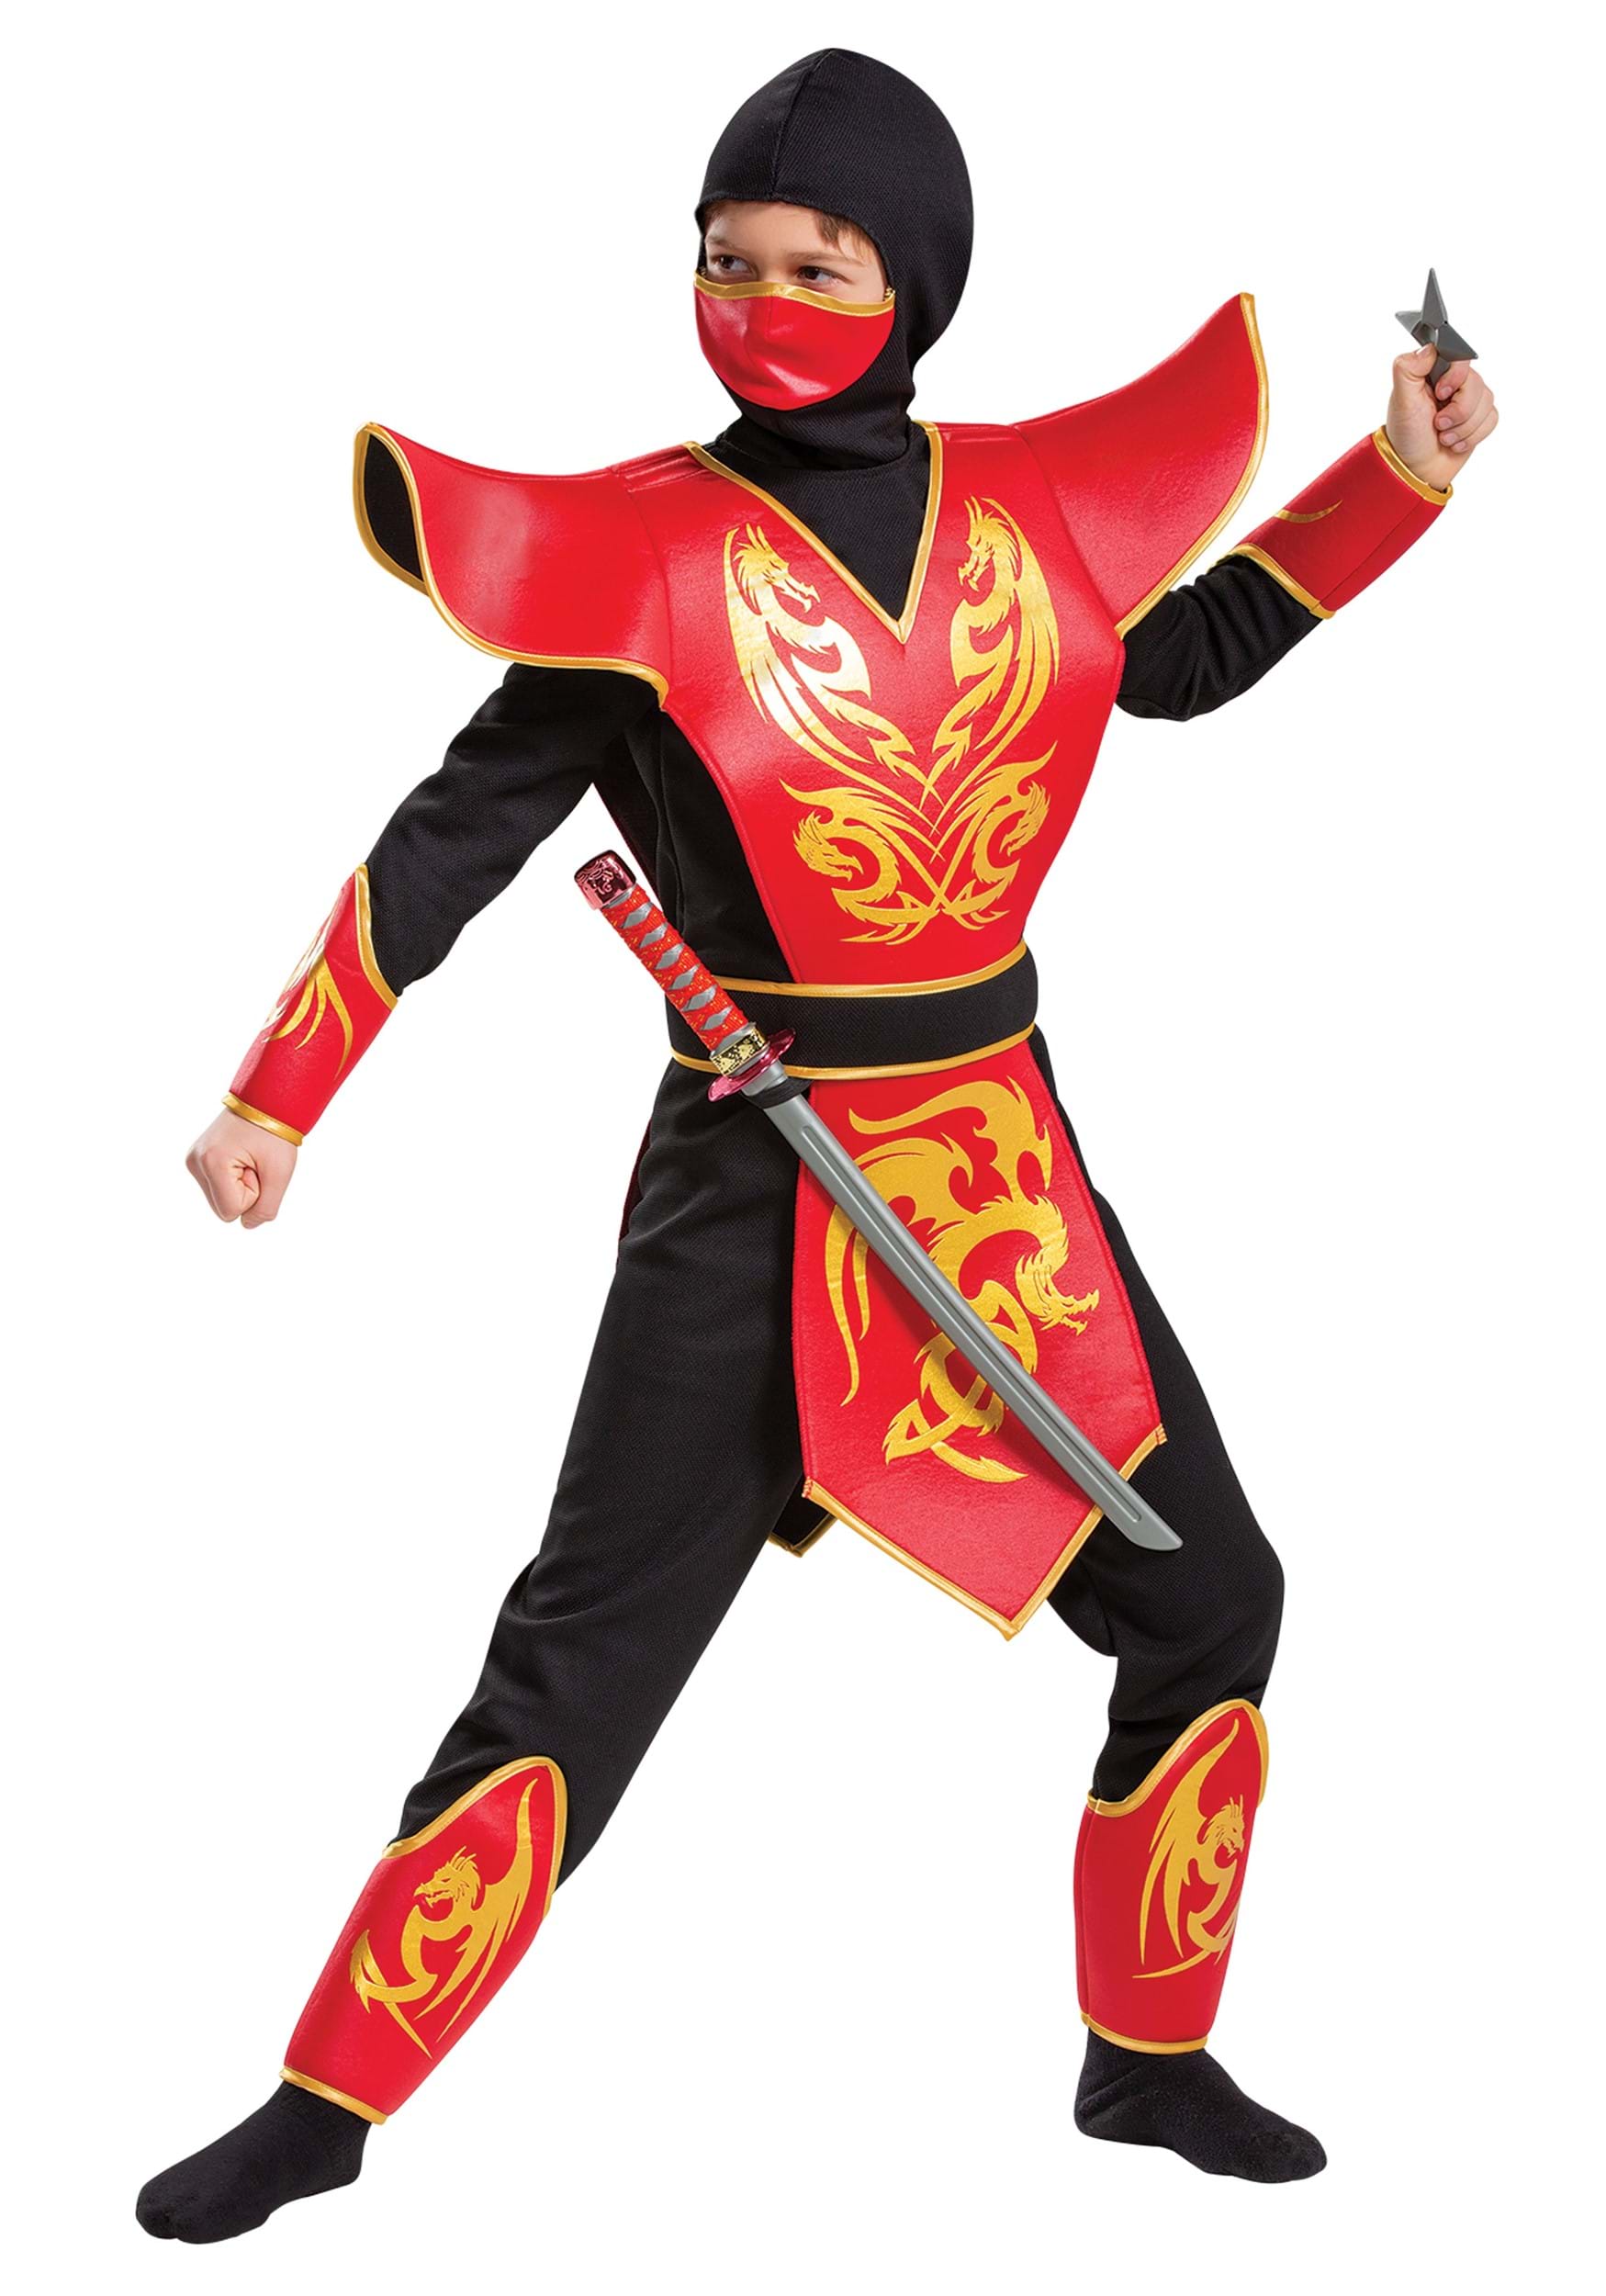 Disguise Ninja Prestige Costume for Kids in Red Black, S (4-6)